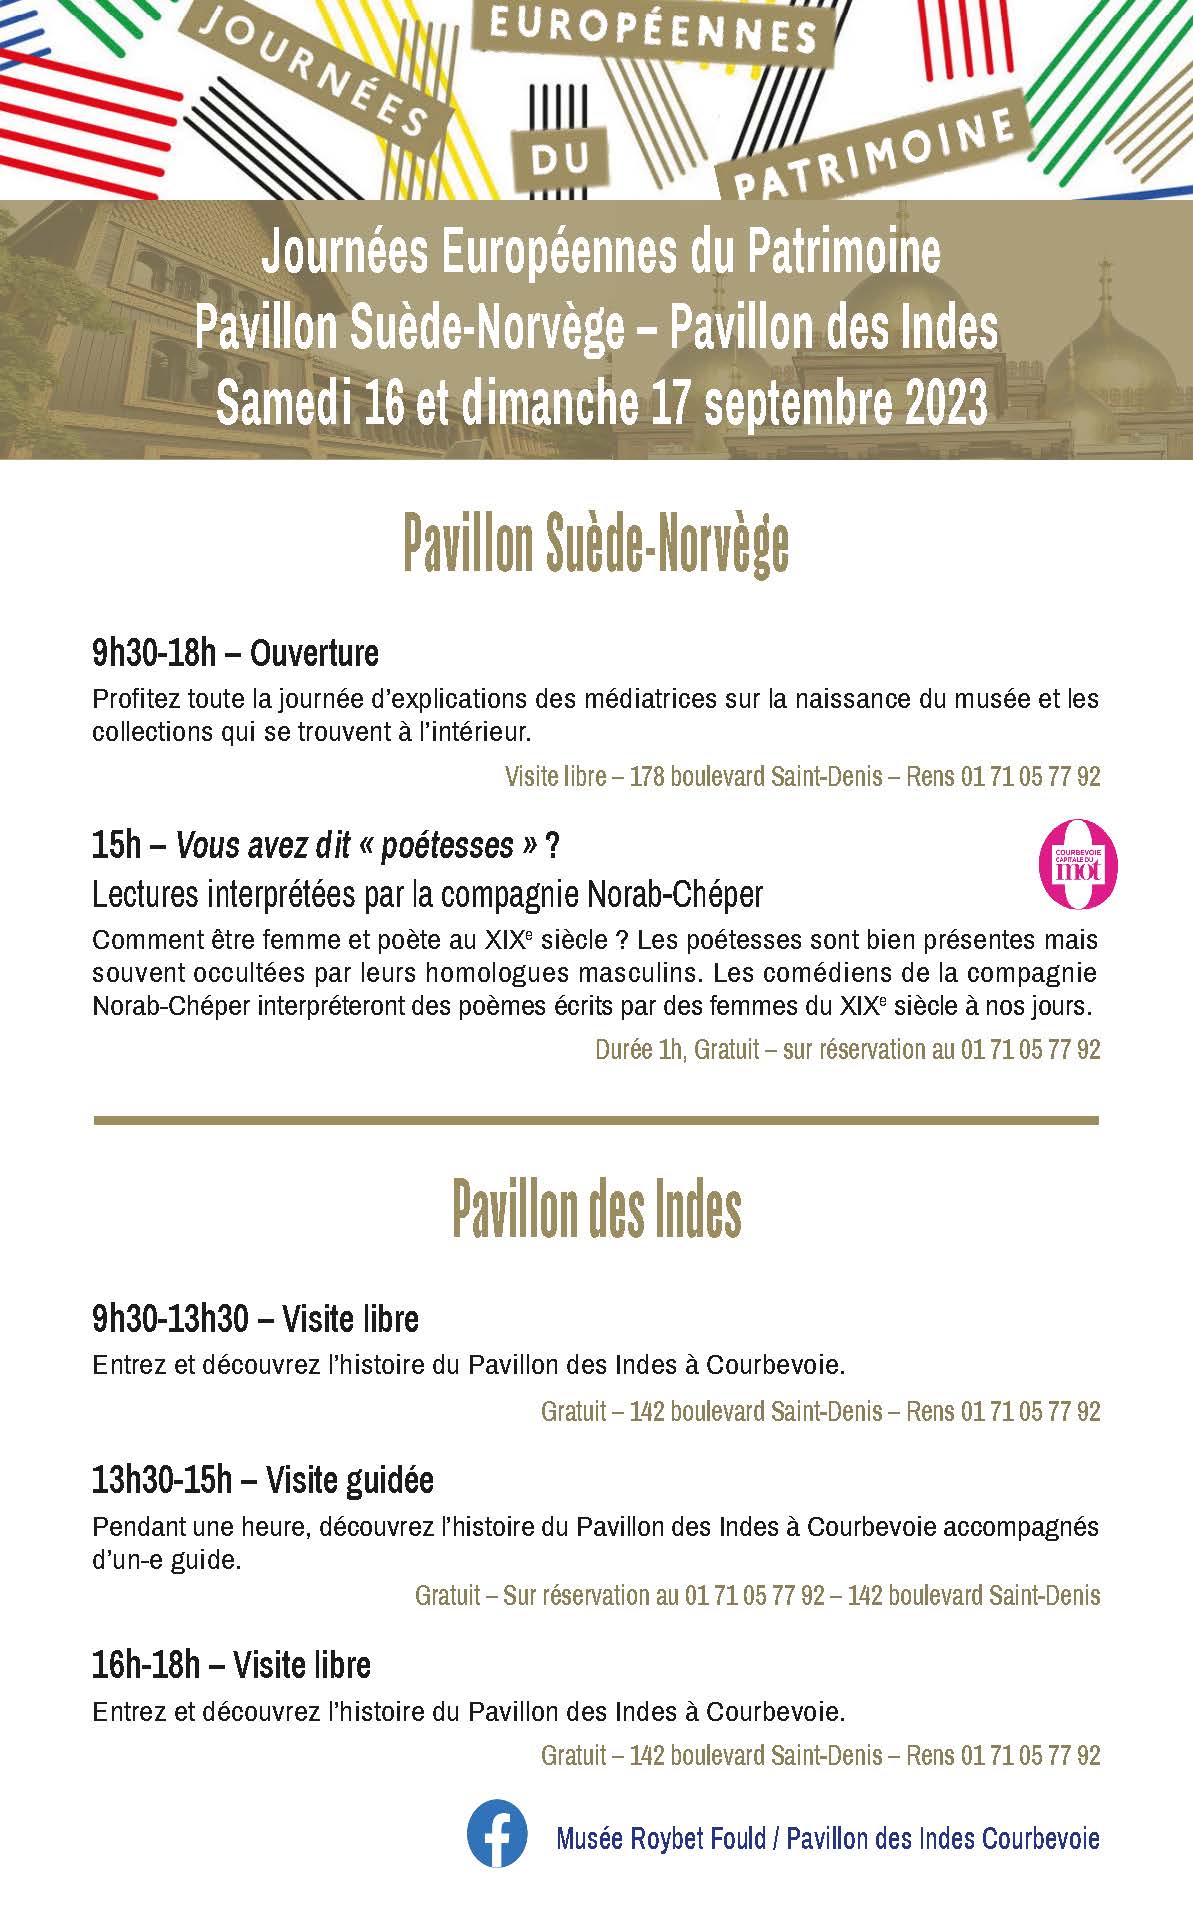 Programmation du programme du Musée Roybet Fould pour les Journées européennes du patrimoine 2023